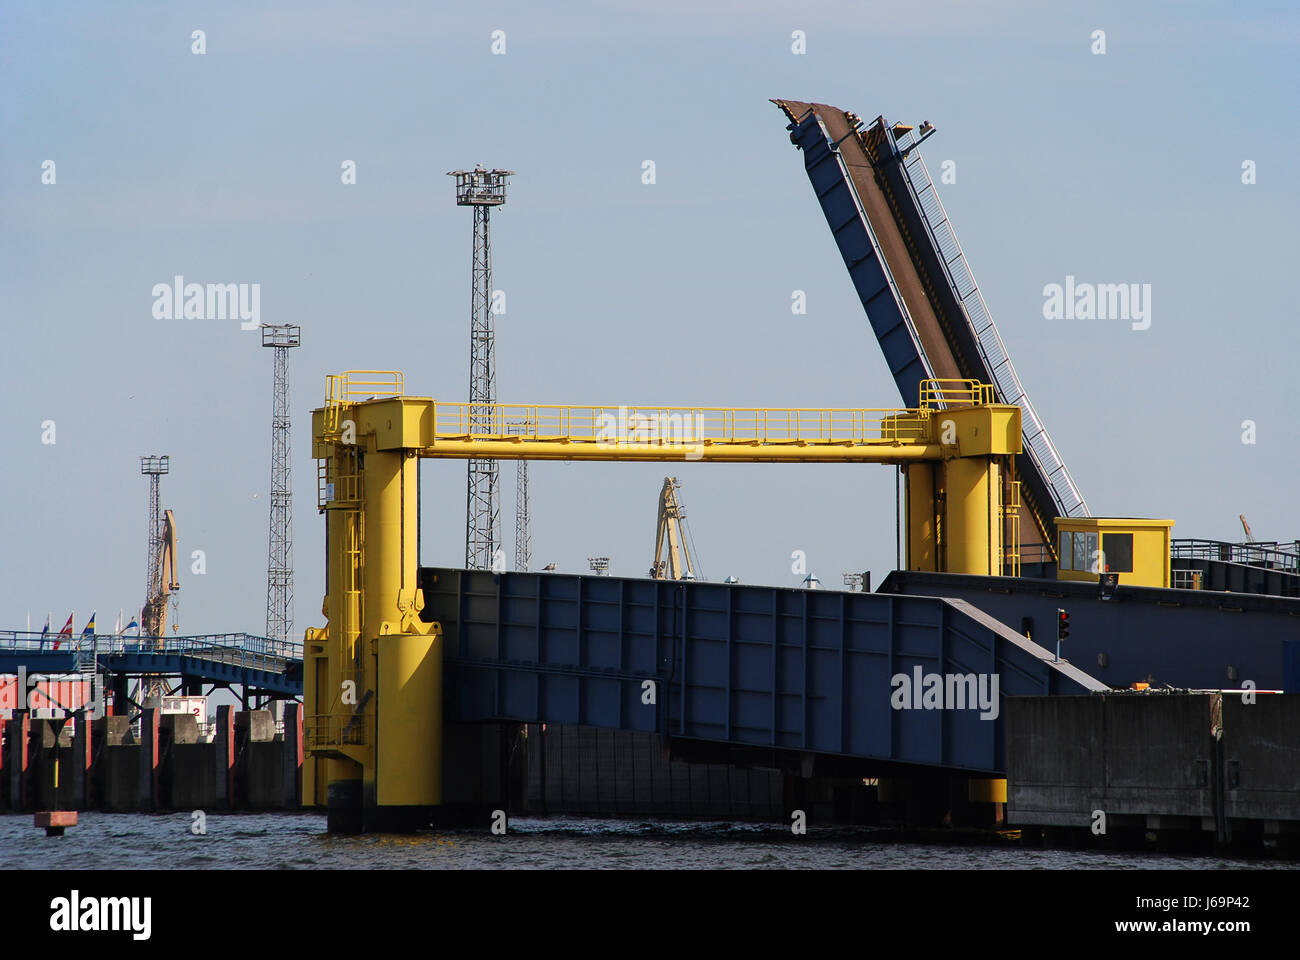 Cinta transportadora de carga rampa de carga descarga act dockyard Europa puerto puertos Foto de stock